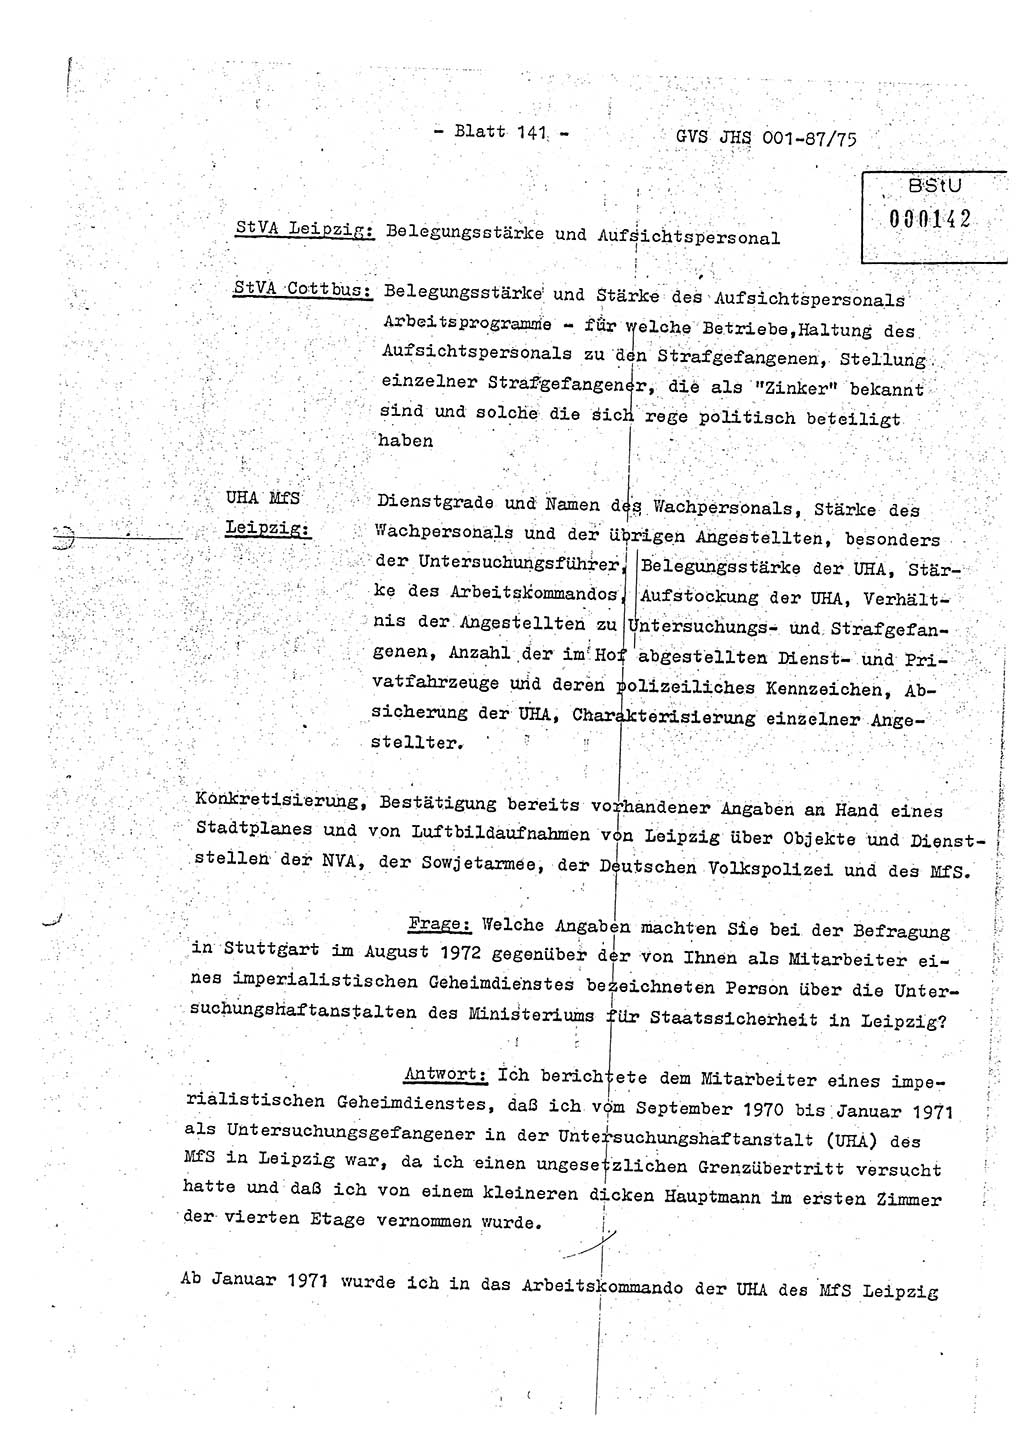 Diplomarbeit Hauptmann Volkmar Heinz (Abt. ⅩⅣ), Oberleutnant Lothar Rüdiger (BV Lpz. Abt. Ⅺ), Ministerium für Staatssicherheit (MfS) [Deutsche Demokratische Republik (DDR)], Juristische Hochschule (JHS), Geheime Verschlußsache (GVS) o001-87/75, Potsdam 1975, Seite 141 (Dipl.-Arb. MfS DDR JHS GVS o001-87/75 1975, S. 141)